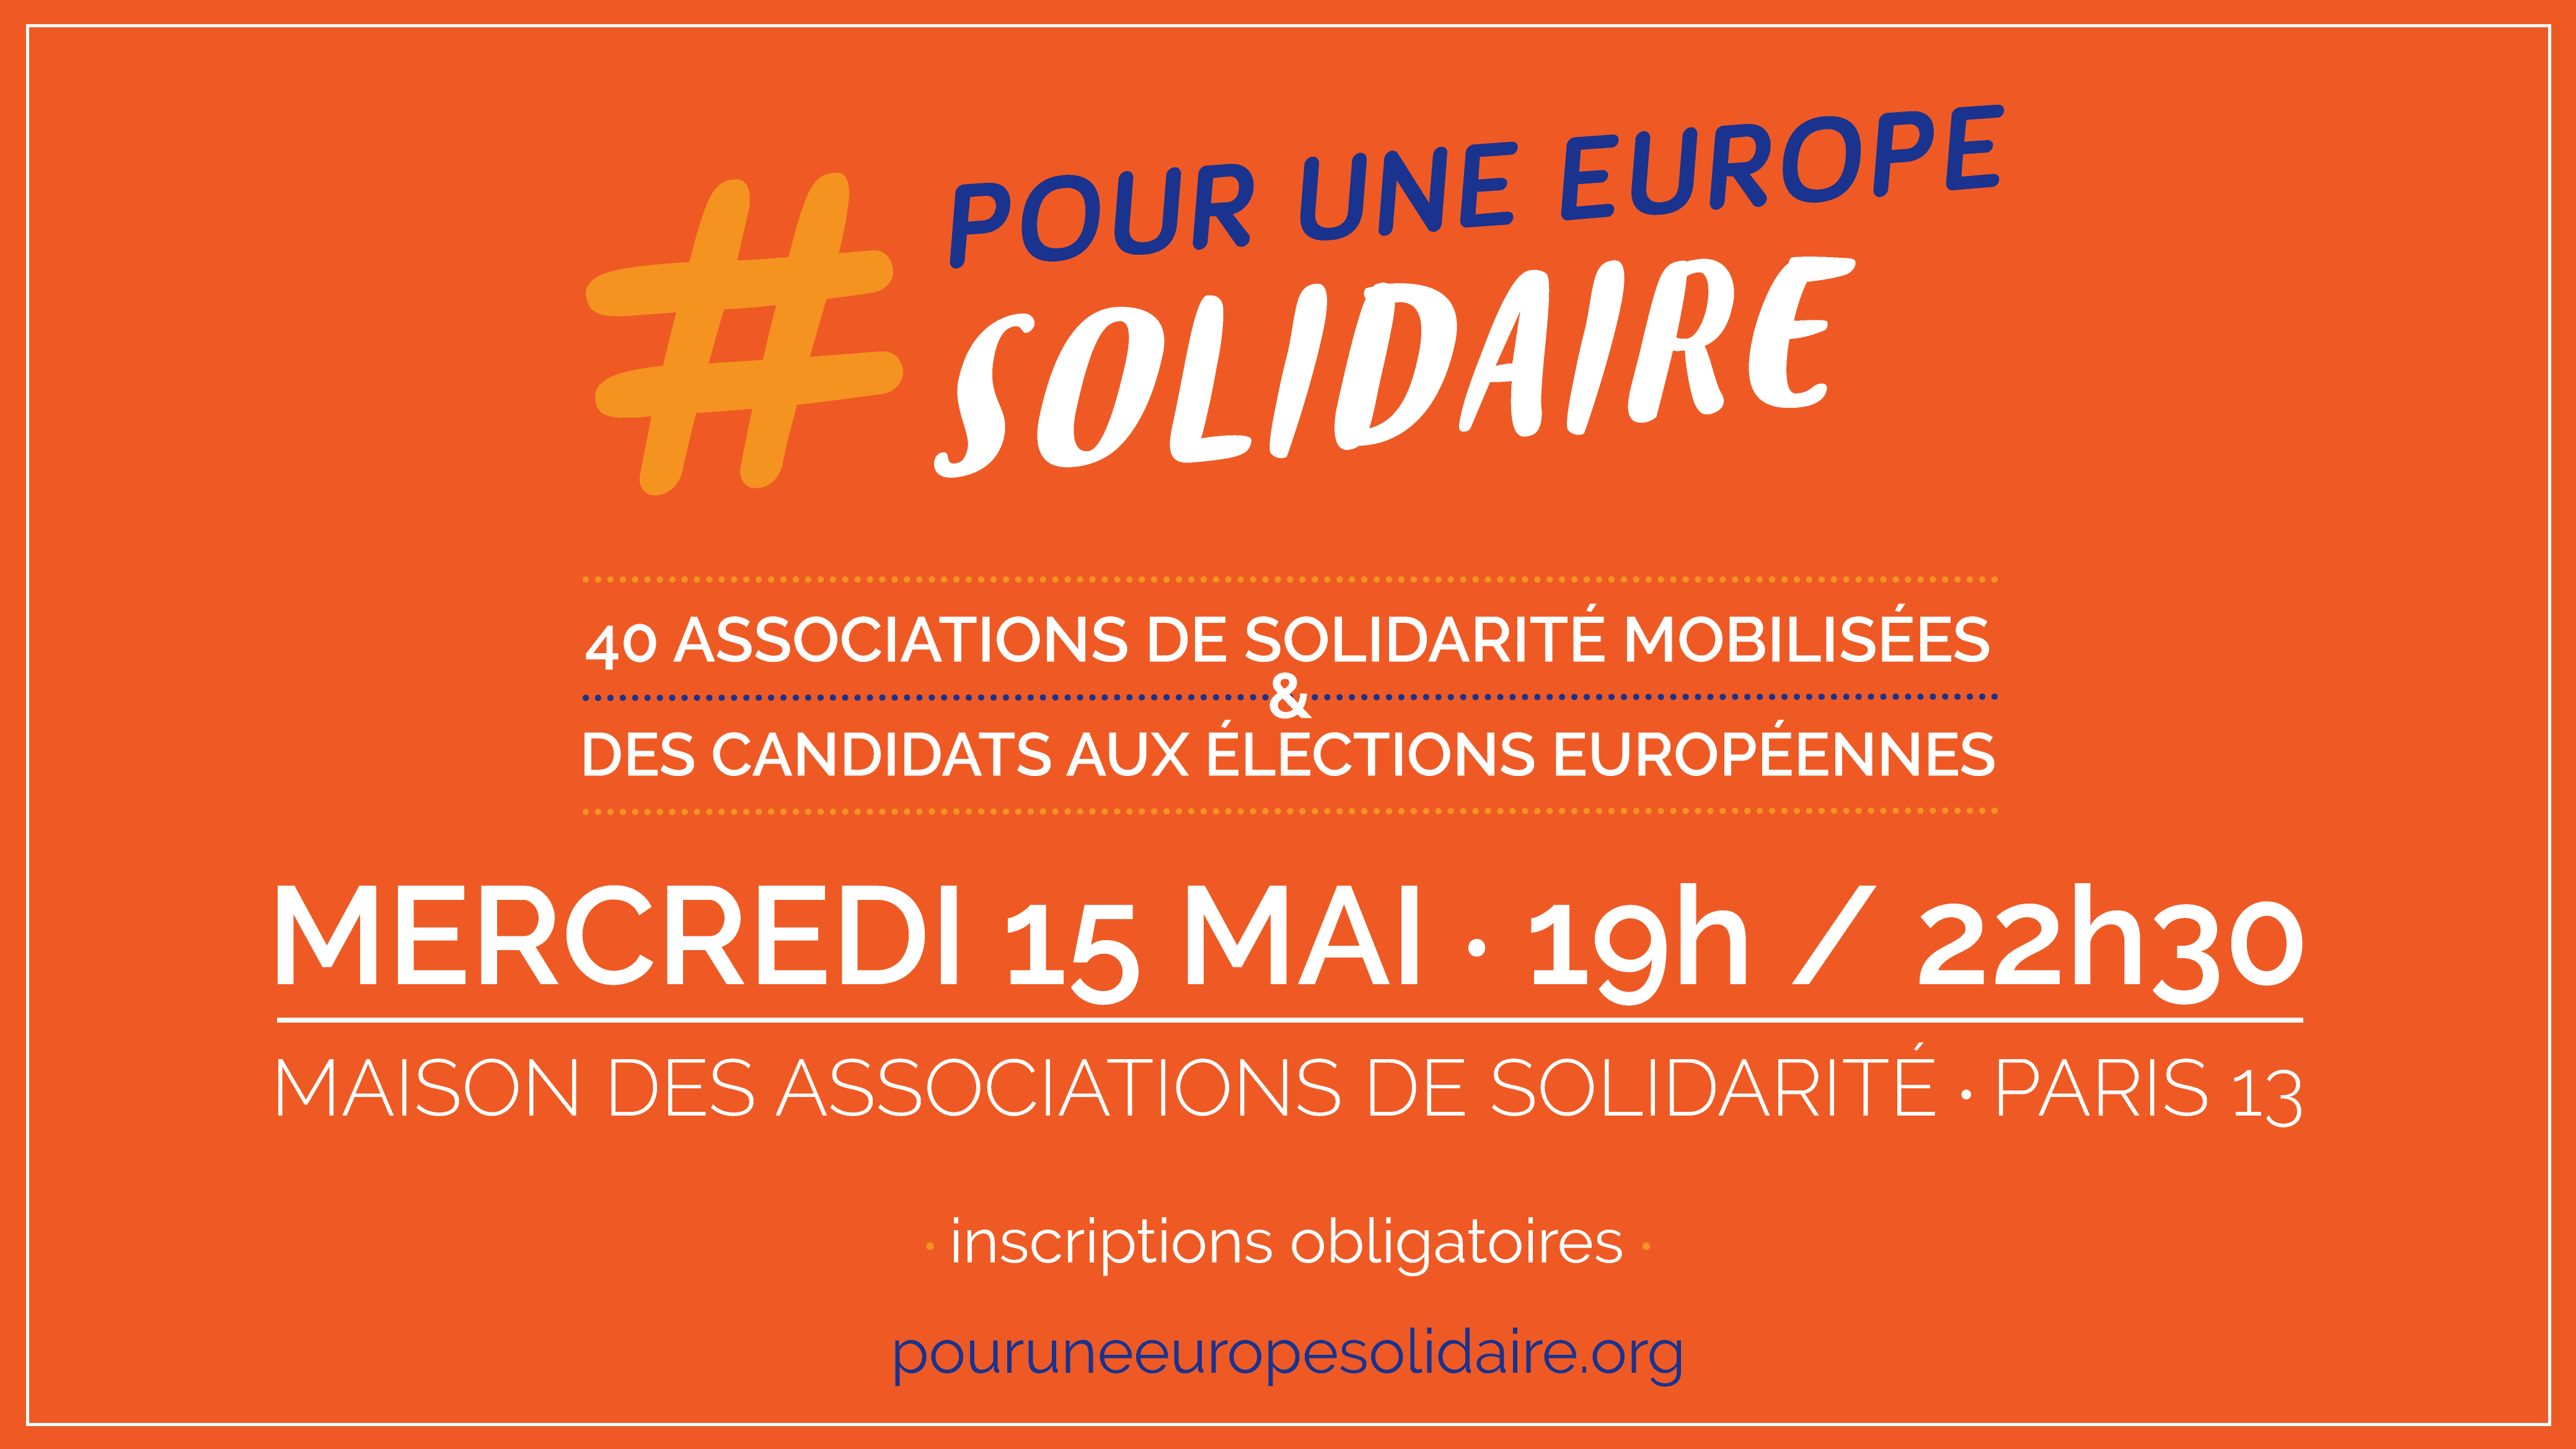 Visuel événement pour une Europe solidaire le 15 Mai 2019